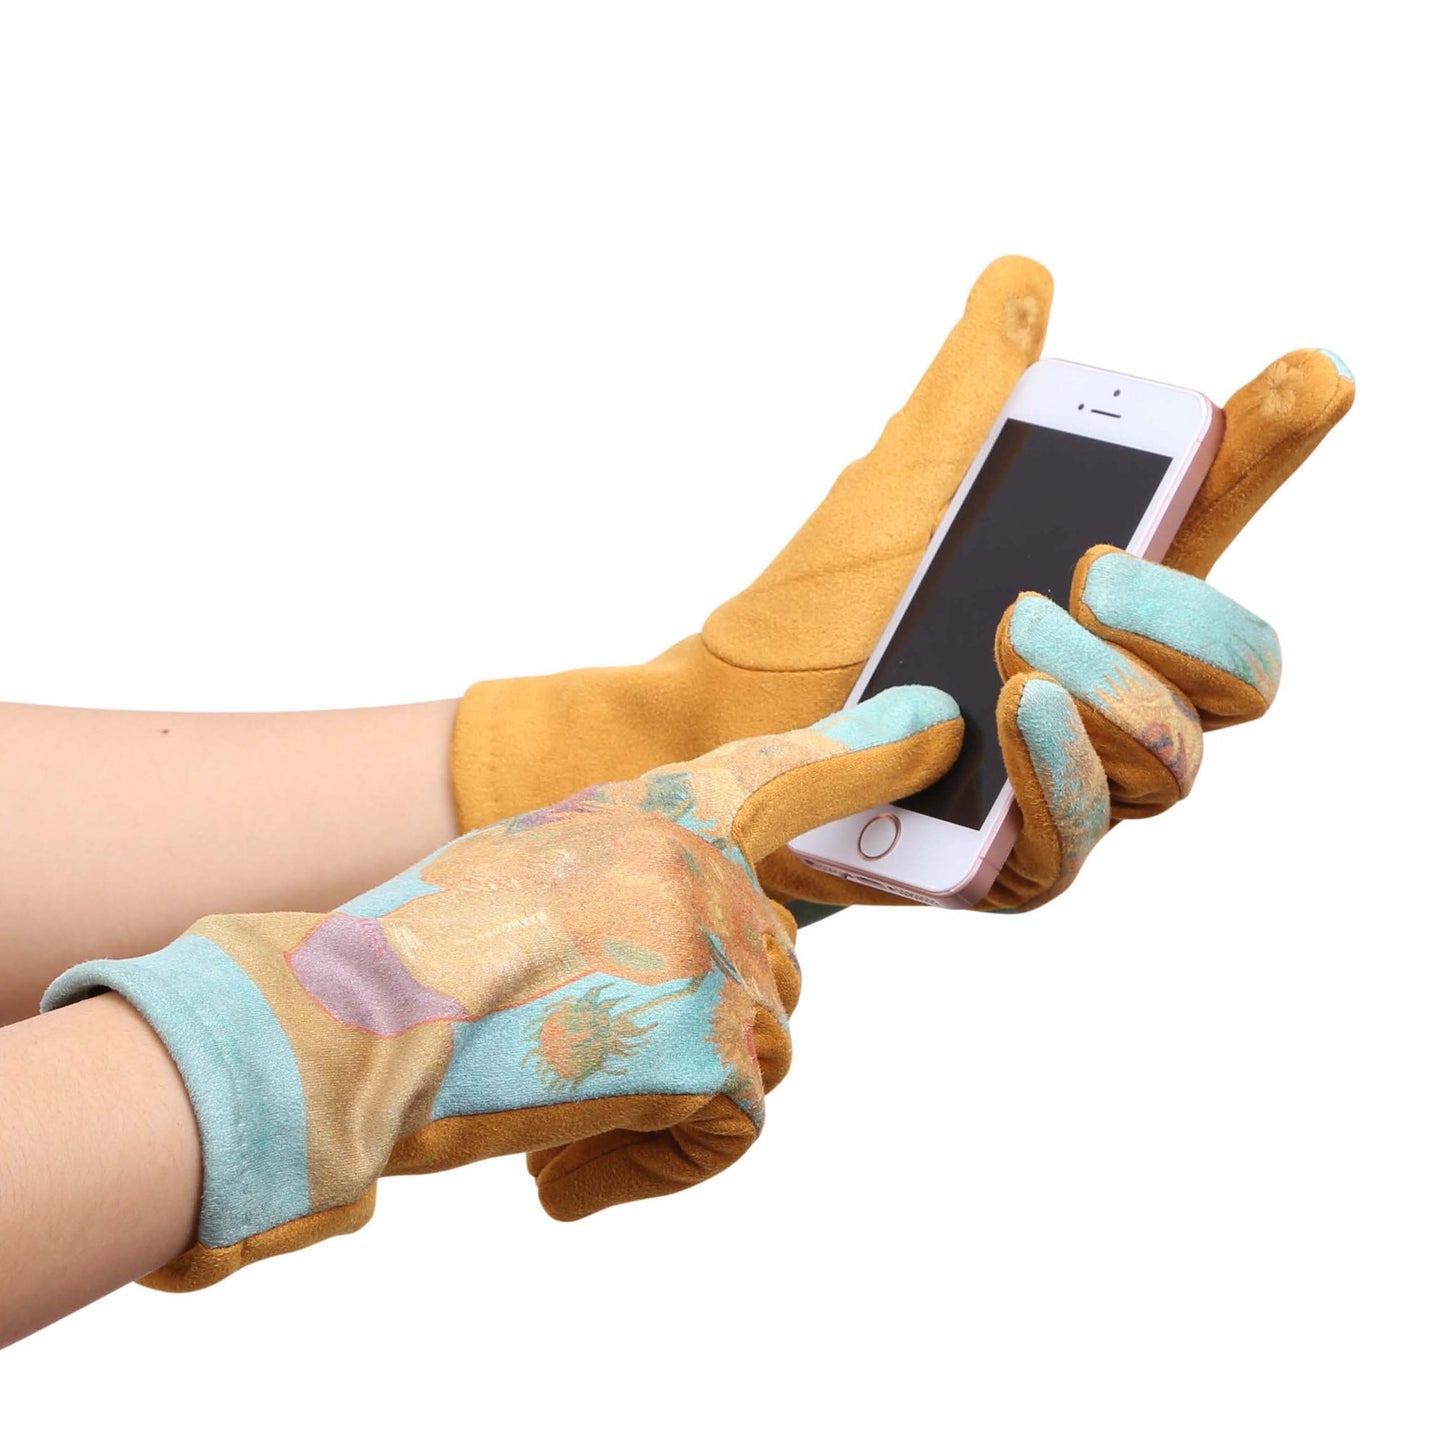 Art Touch Screen Gloves